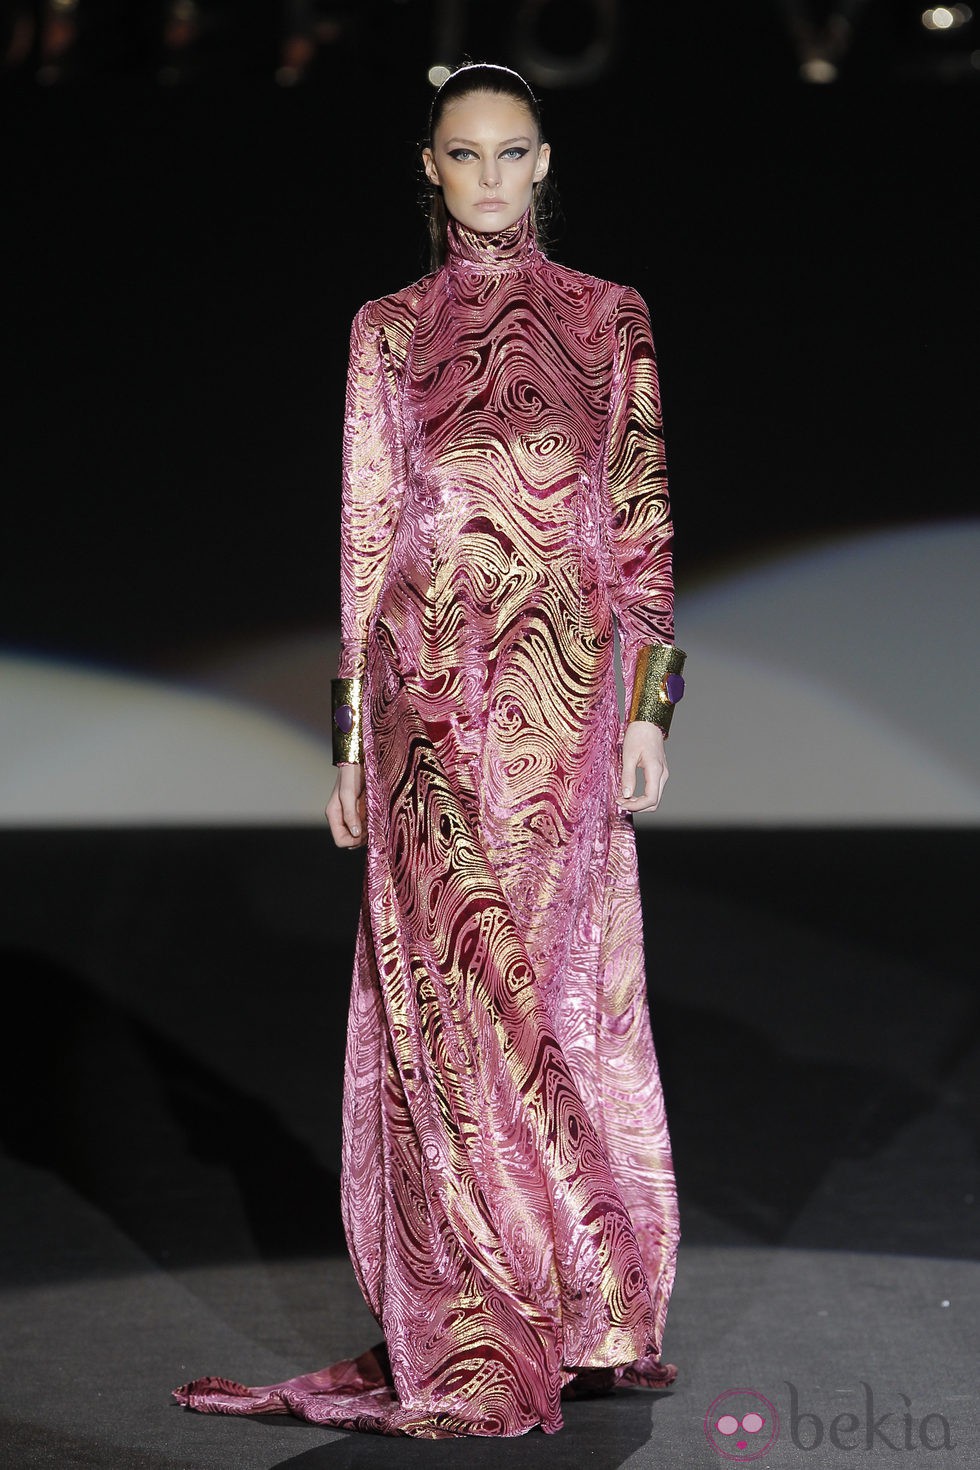 Vestido túnica de la colección otoño/invierno 2013/2014 de Roberto Verino en Madrid Fashion Week